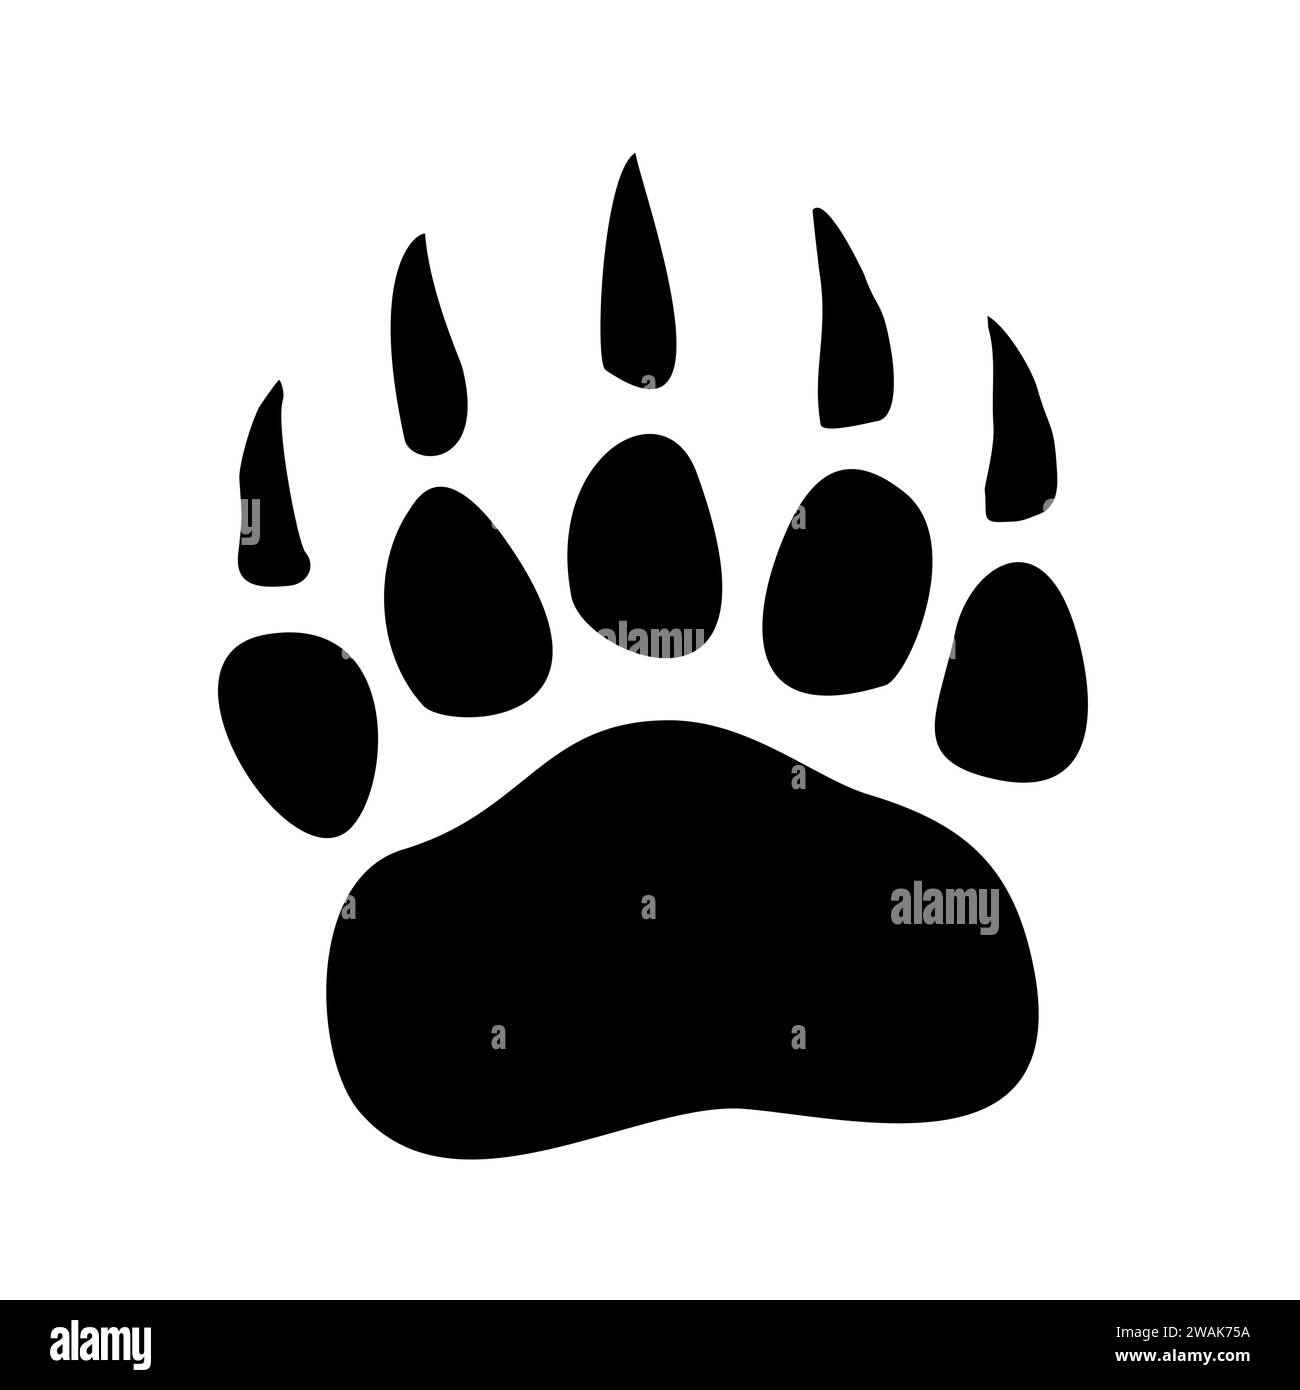 Icona di stampa della zampa dell'orso isolata su sfondo bianco. Simbolo dell'impronta animale, illustrazione vettoriale. Illustrazione Vettoriale